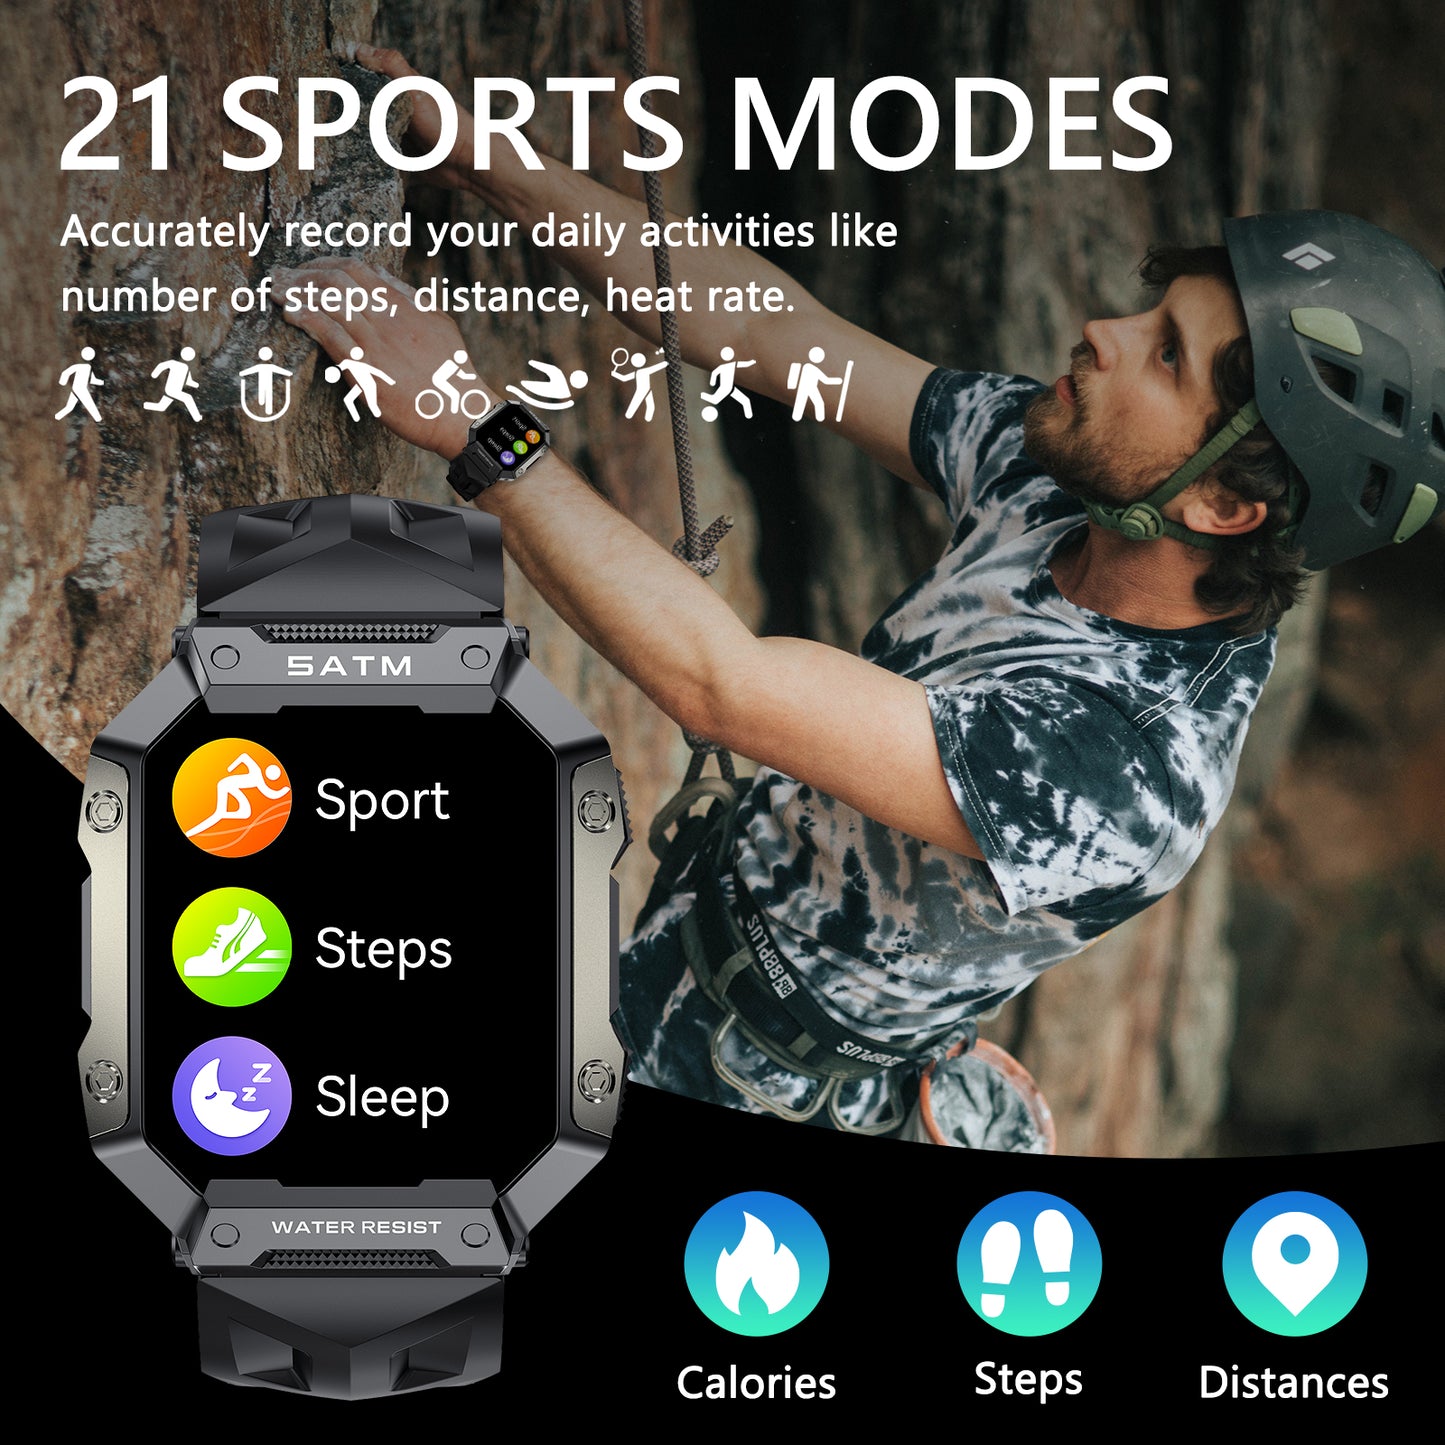 NHJ03 Outdoor sport smart watch